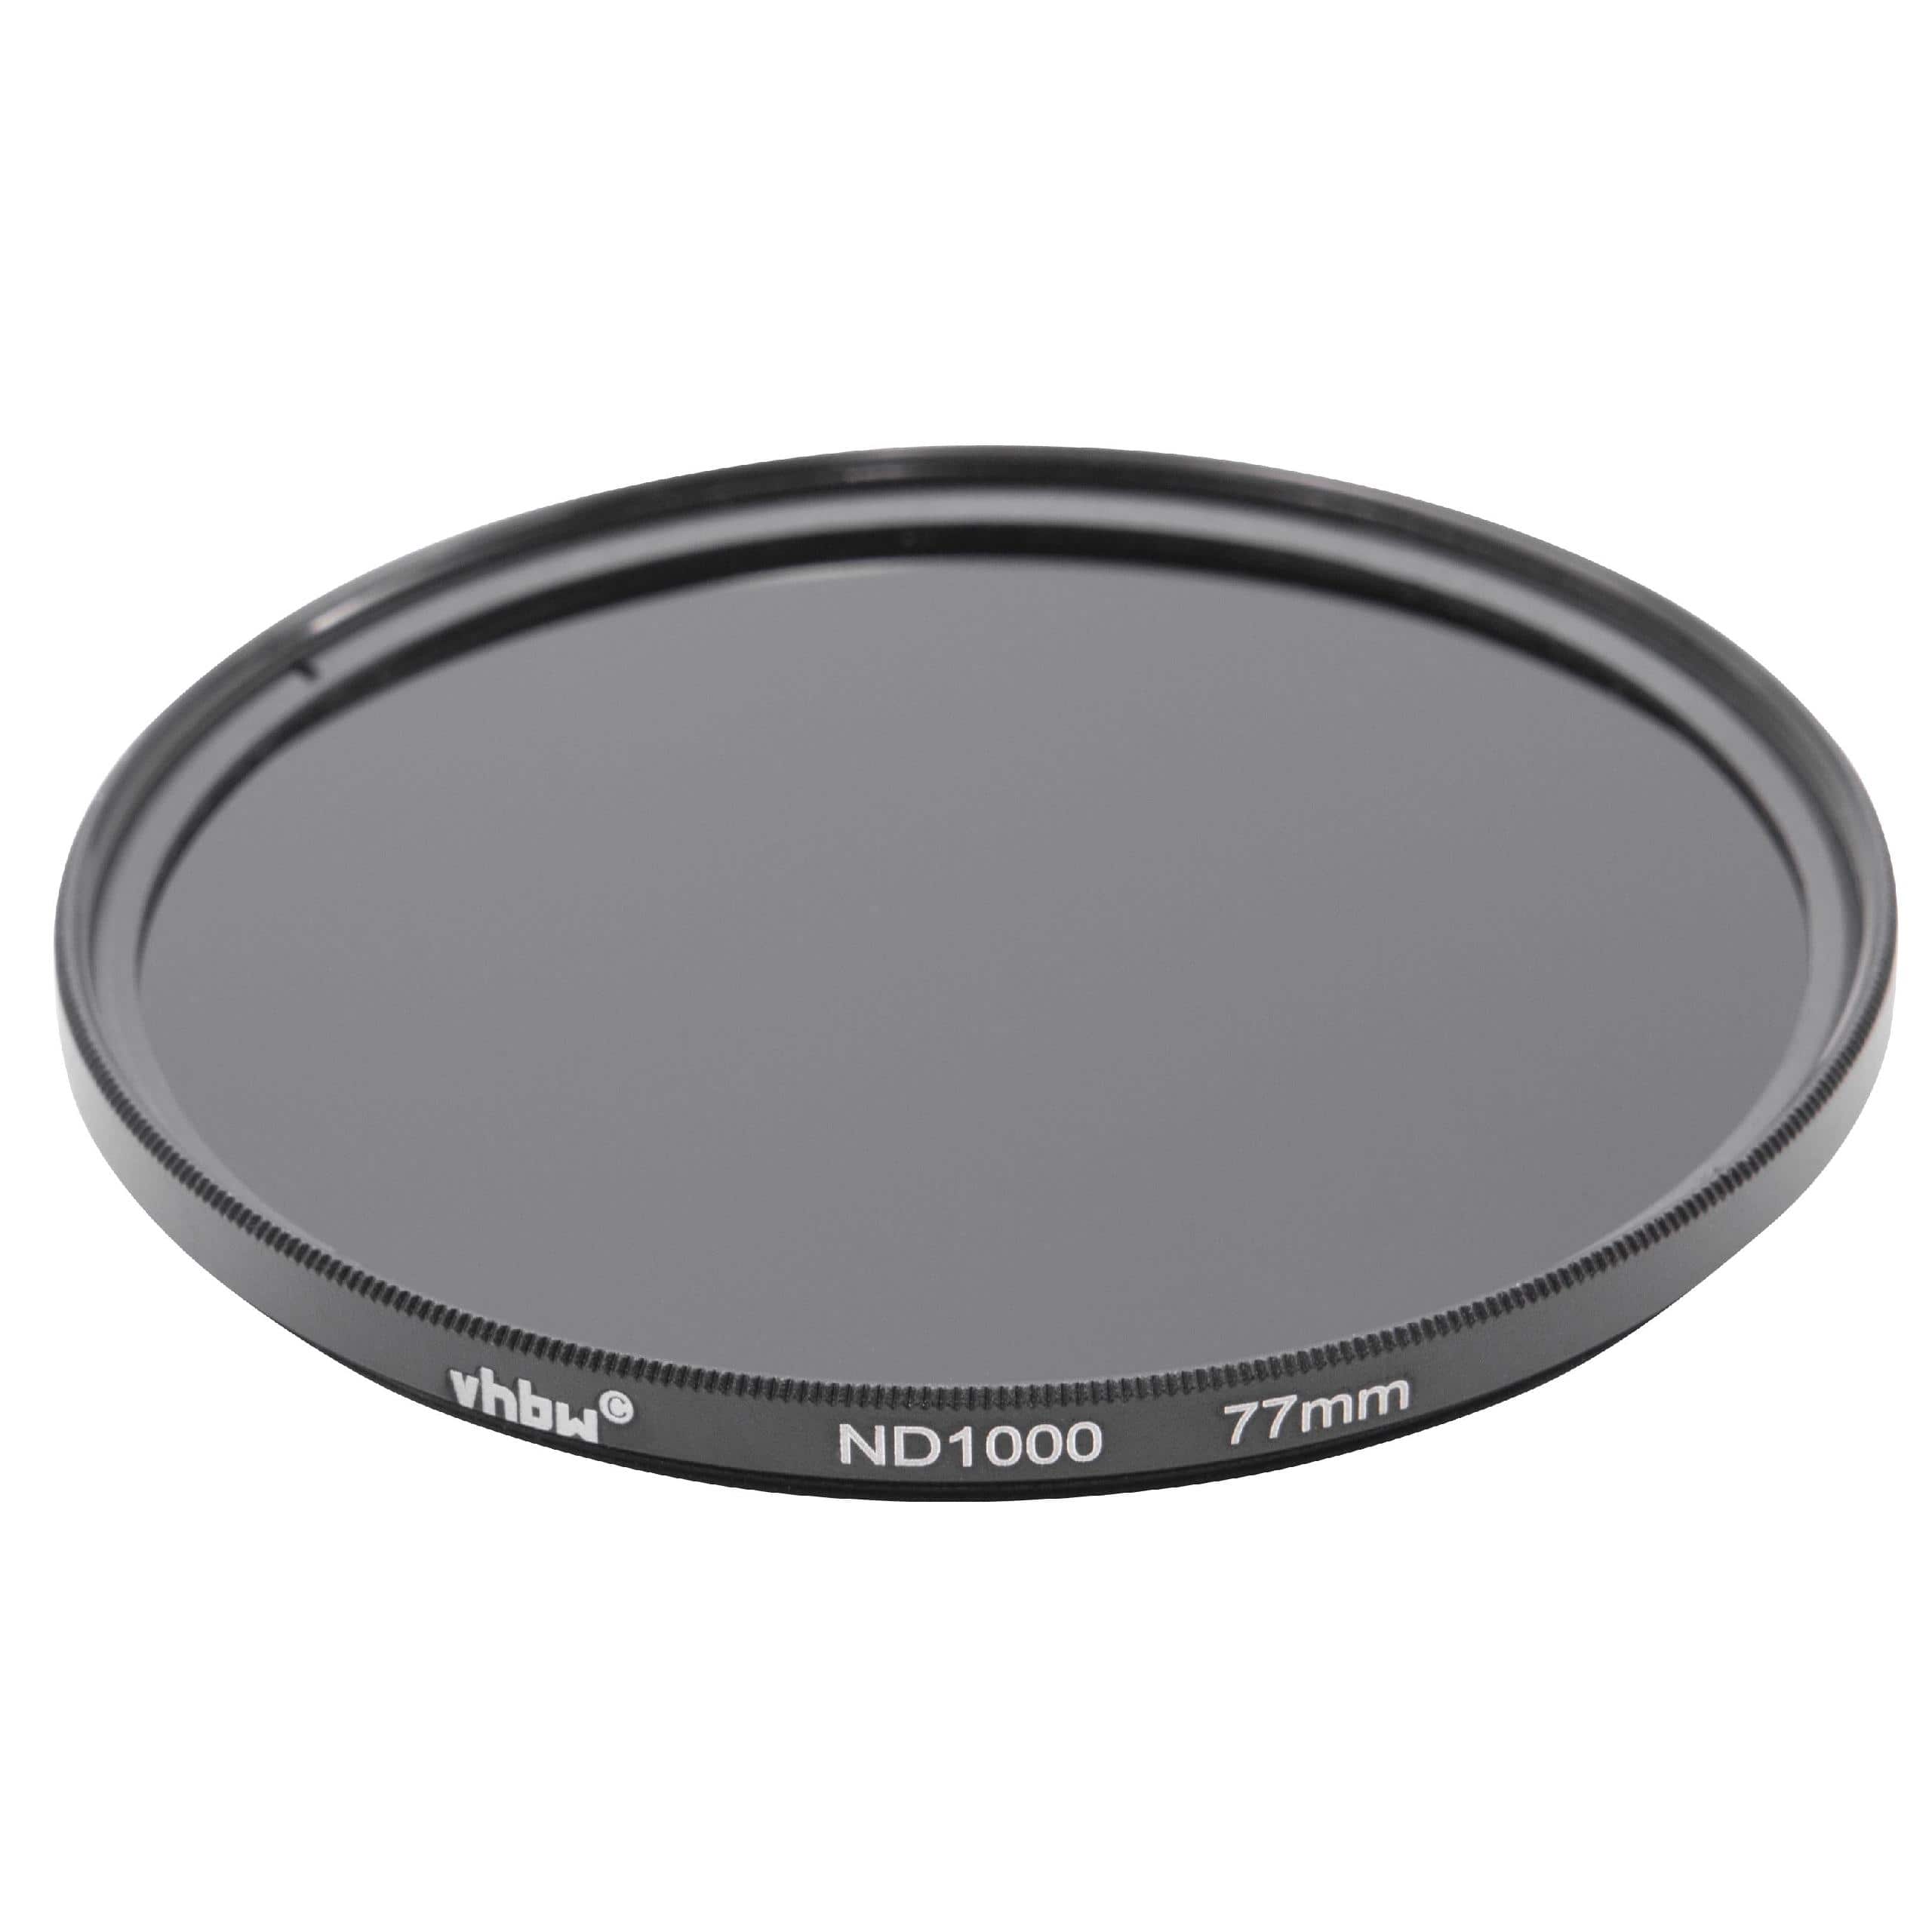 Filtre ND 1000 universel pour objectif d'appareil photo de 77 mm de diamètre – Filtre gris